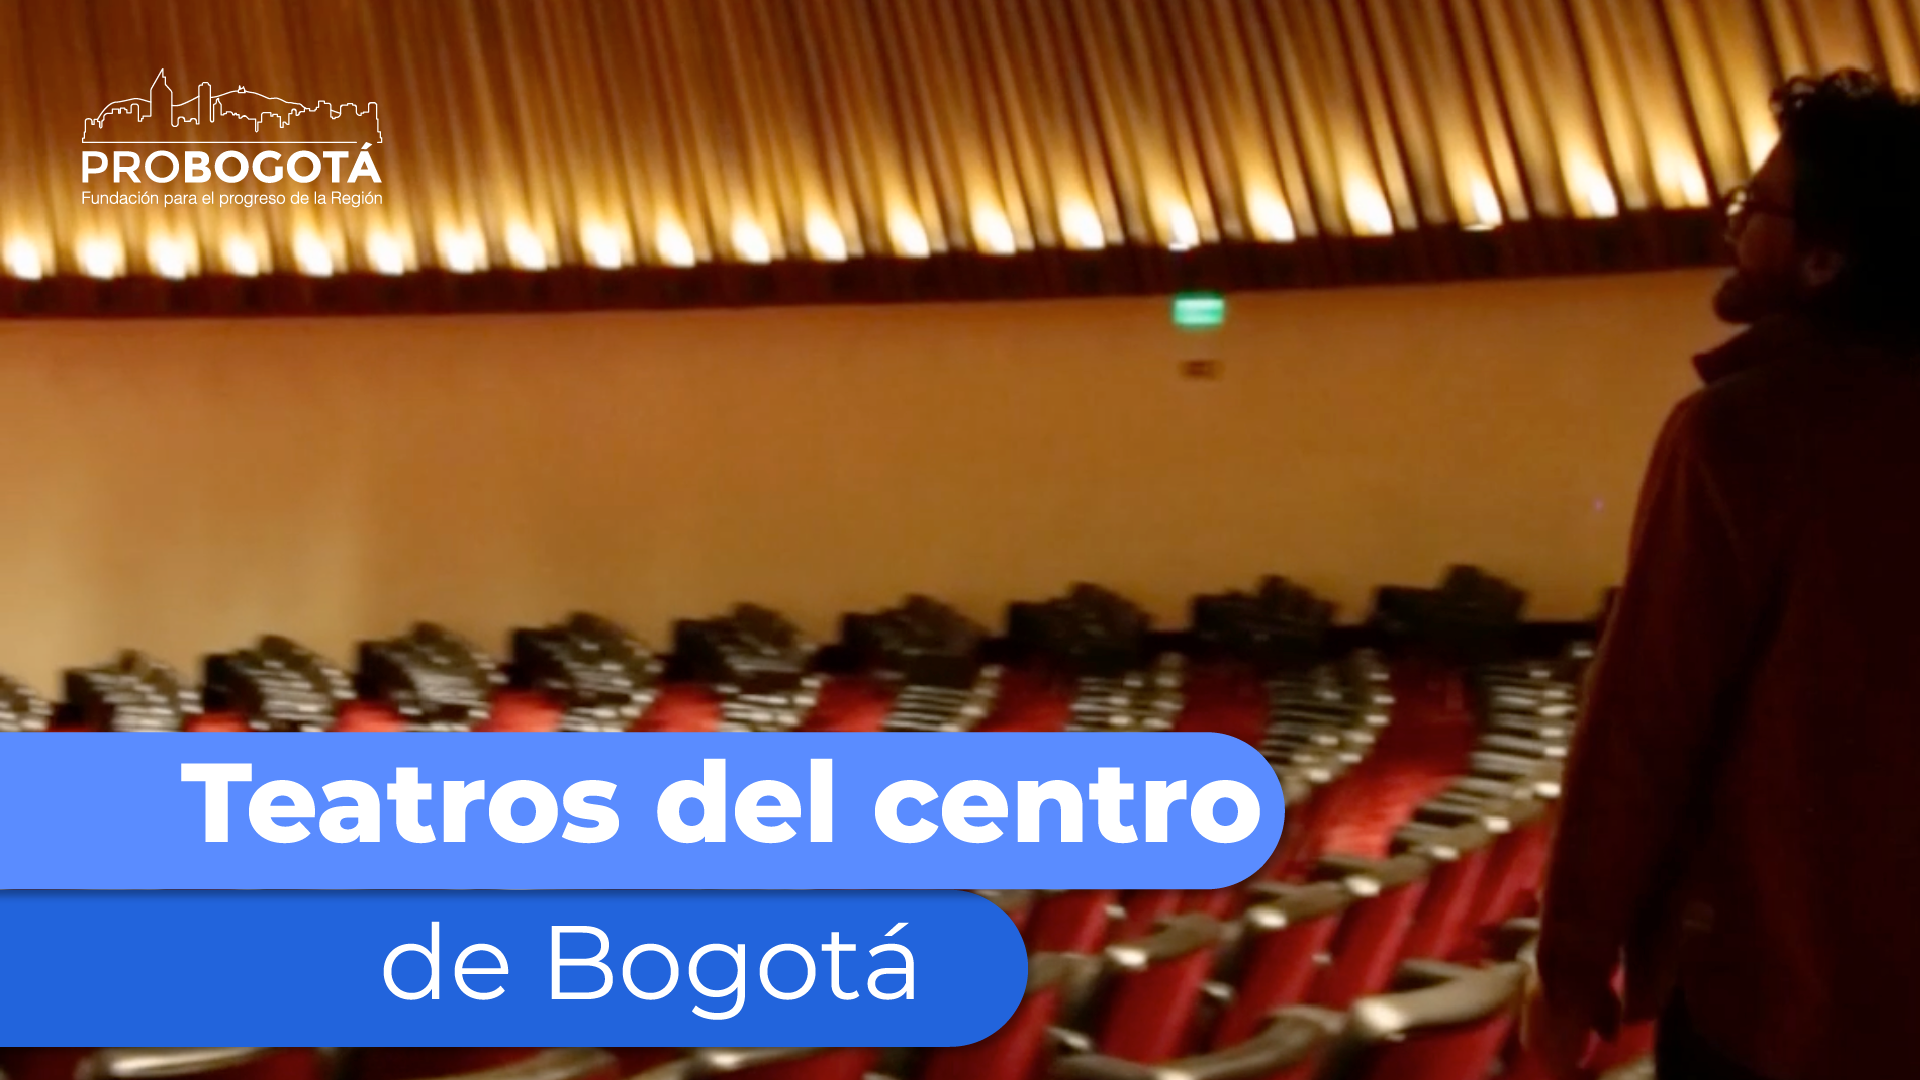 Teatros del centro de Bogotá